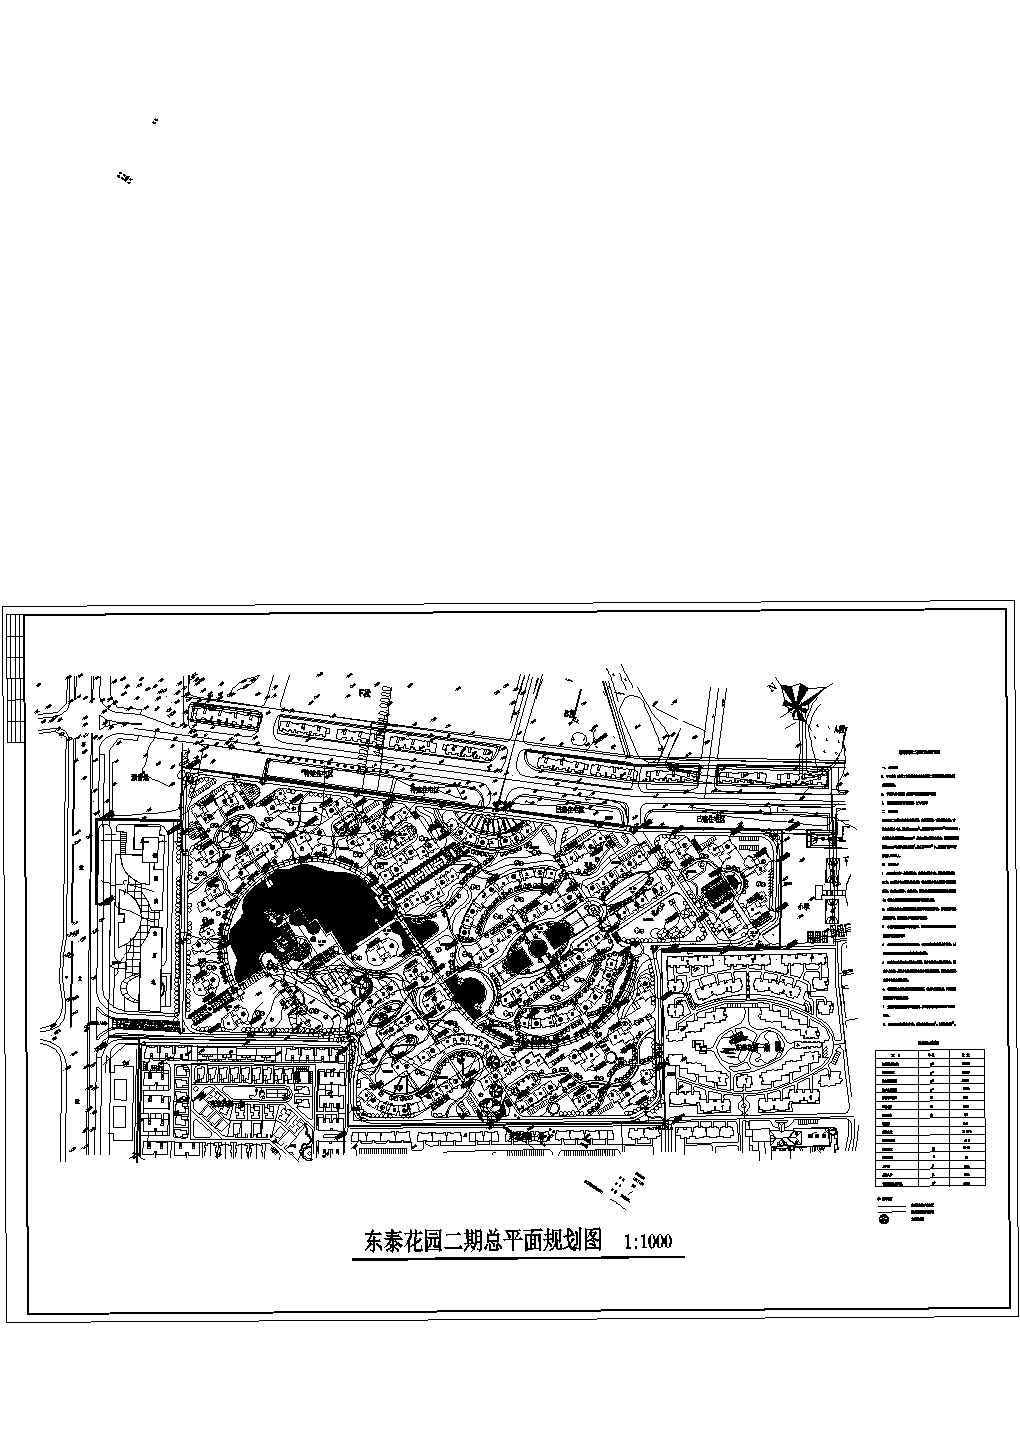 【东莞市】东泰花园二期总平面规划设计图1:1000，含规划设计说明